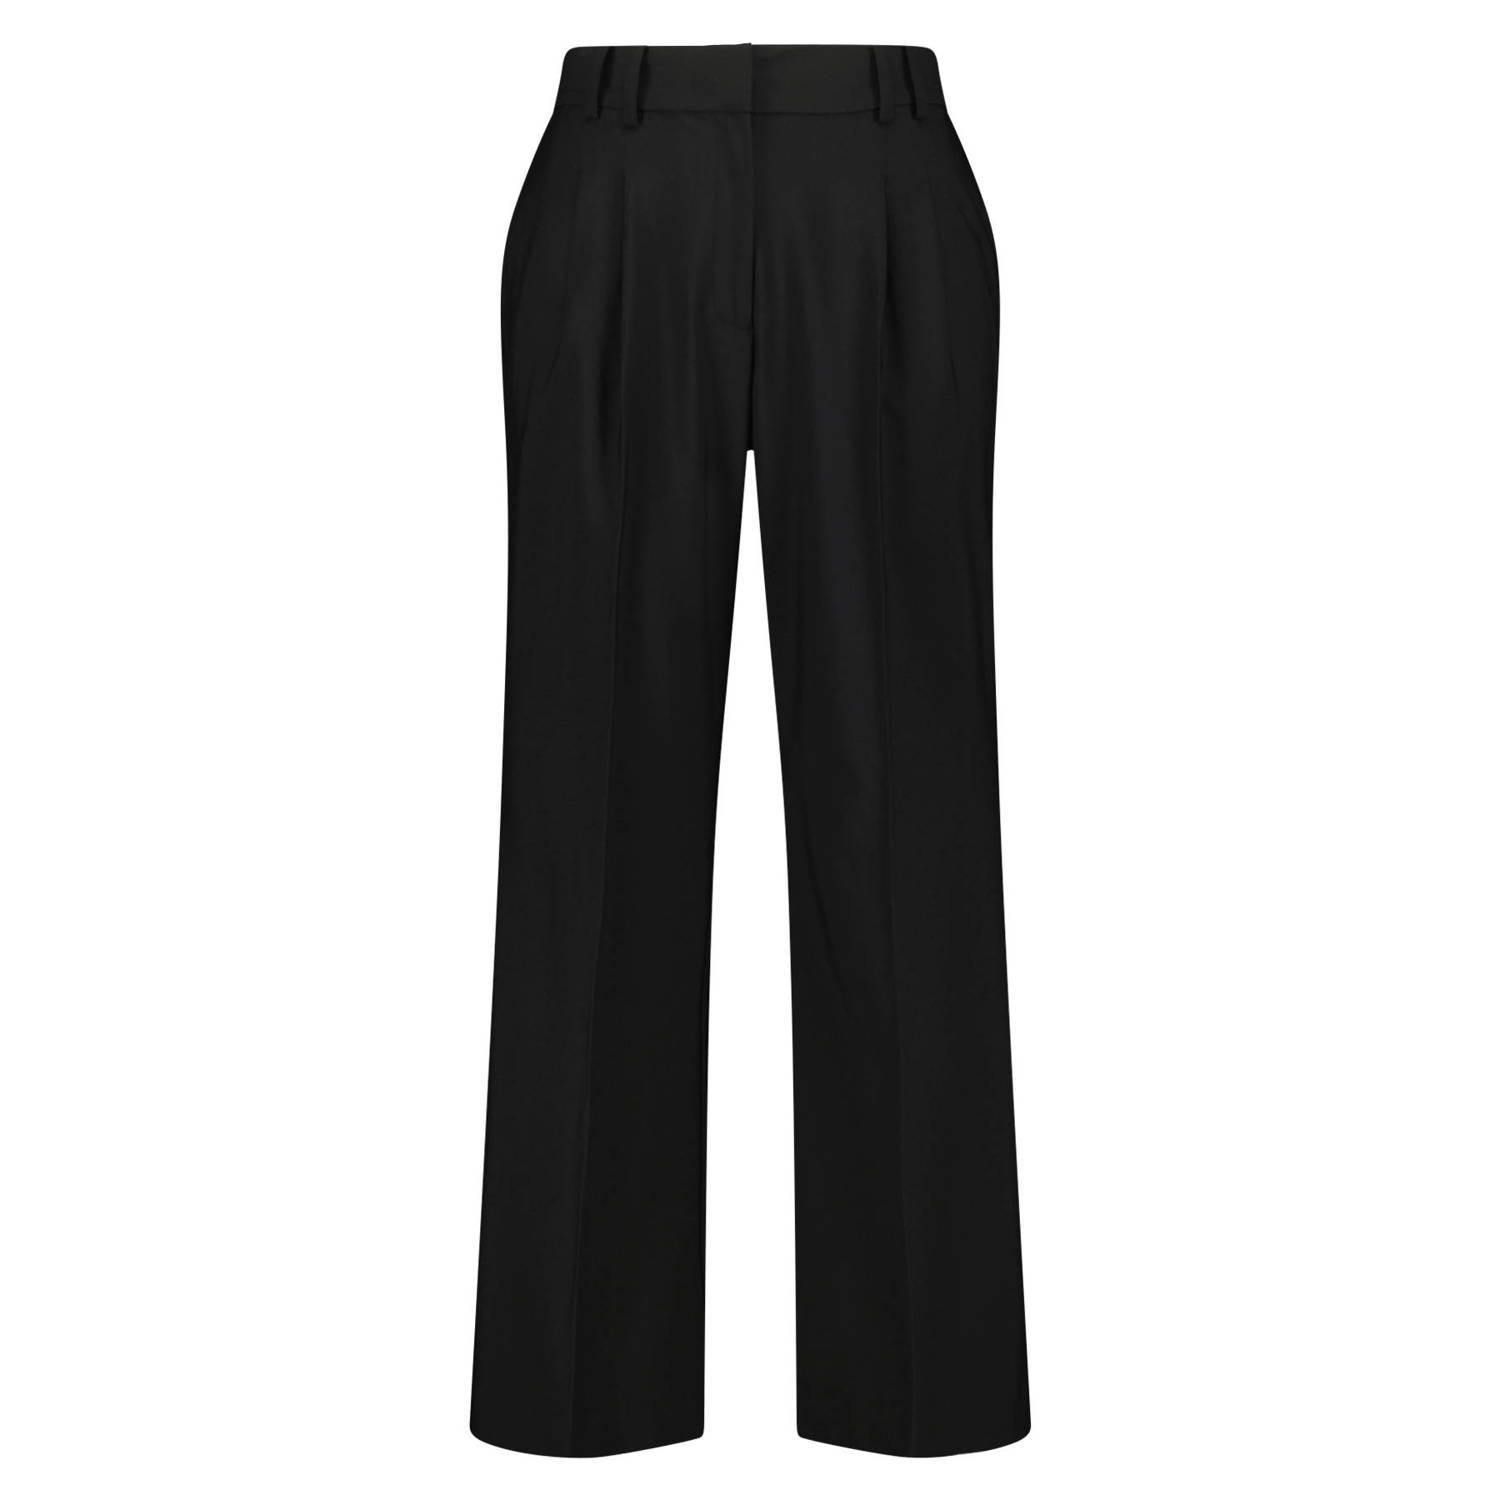 MS Mode high waist straight fit pantalon zwart